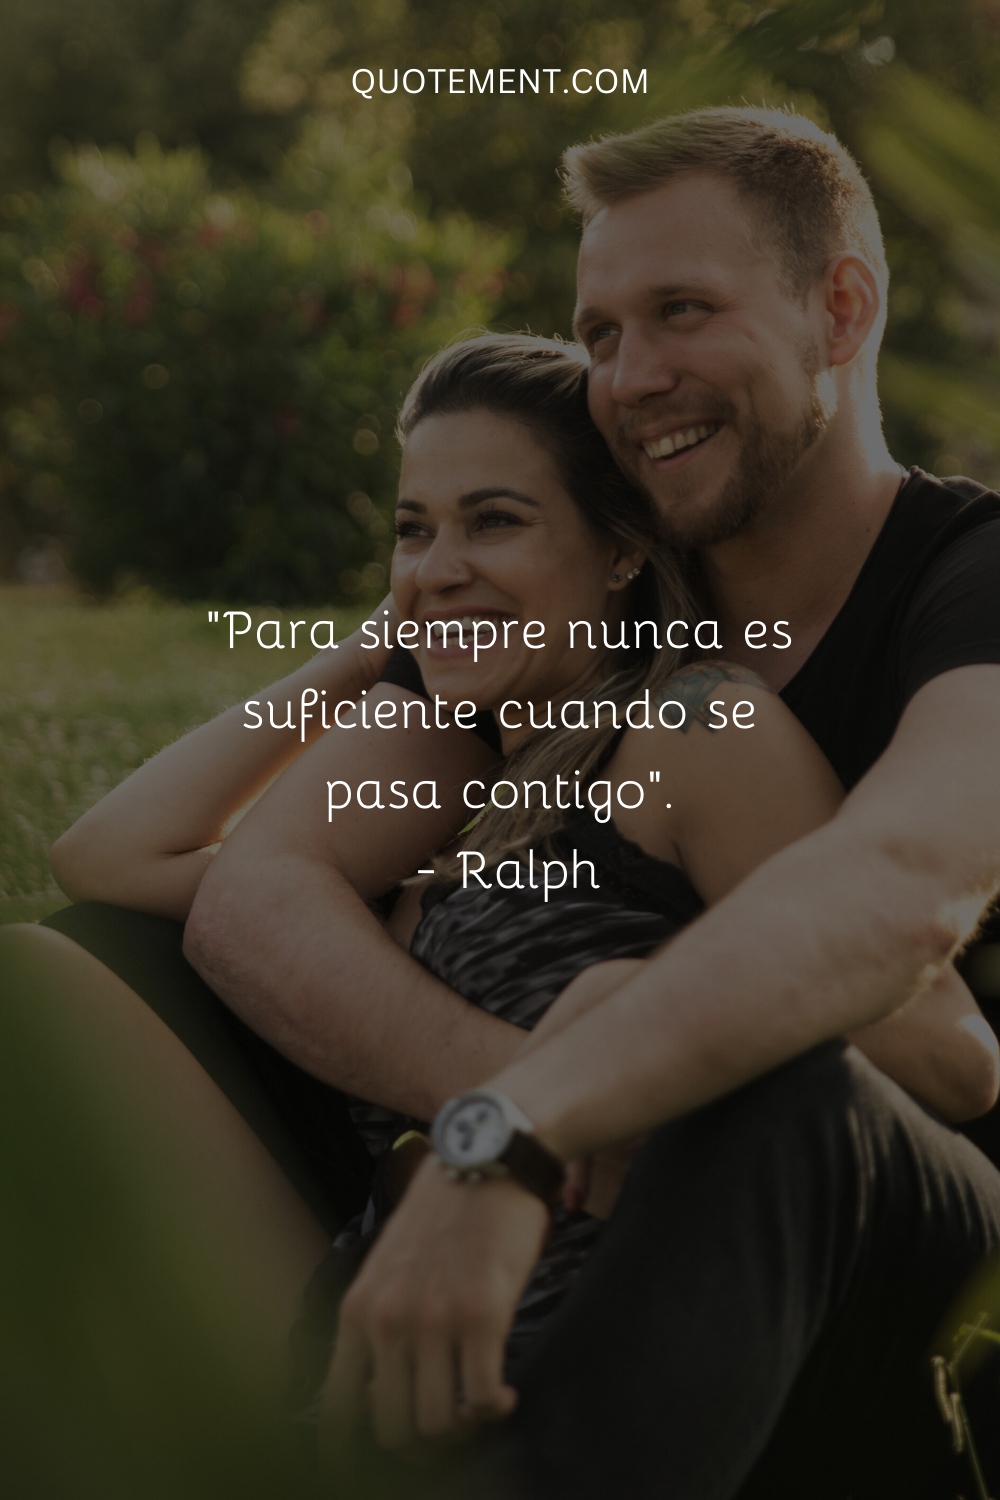 "Para siempre nunca es suficiente cuando se pasa contigo". - Ralph